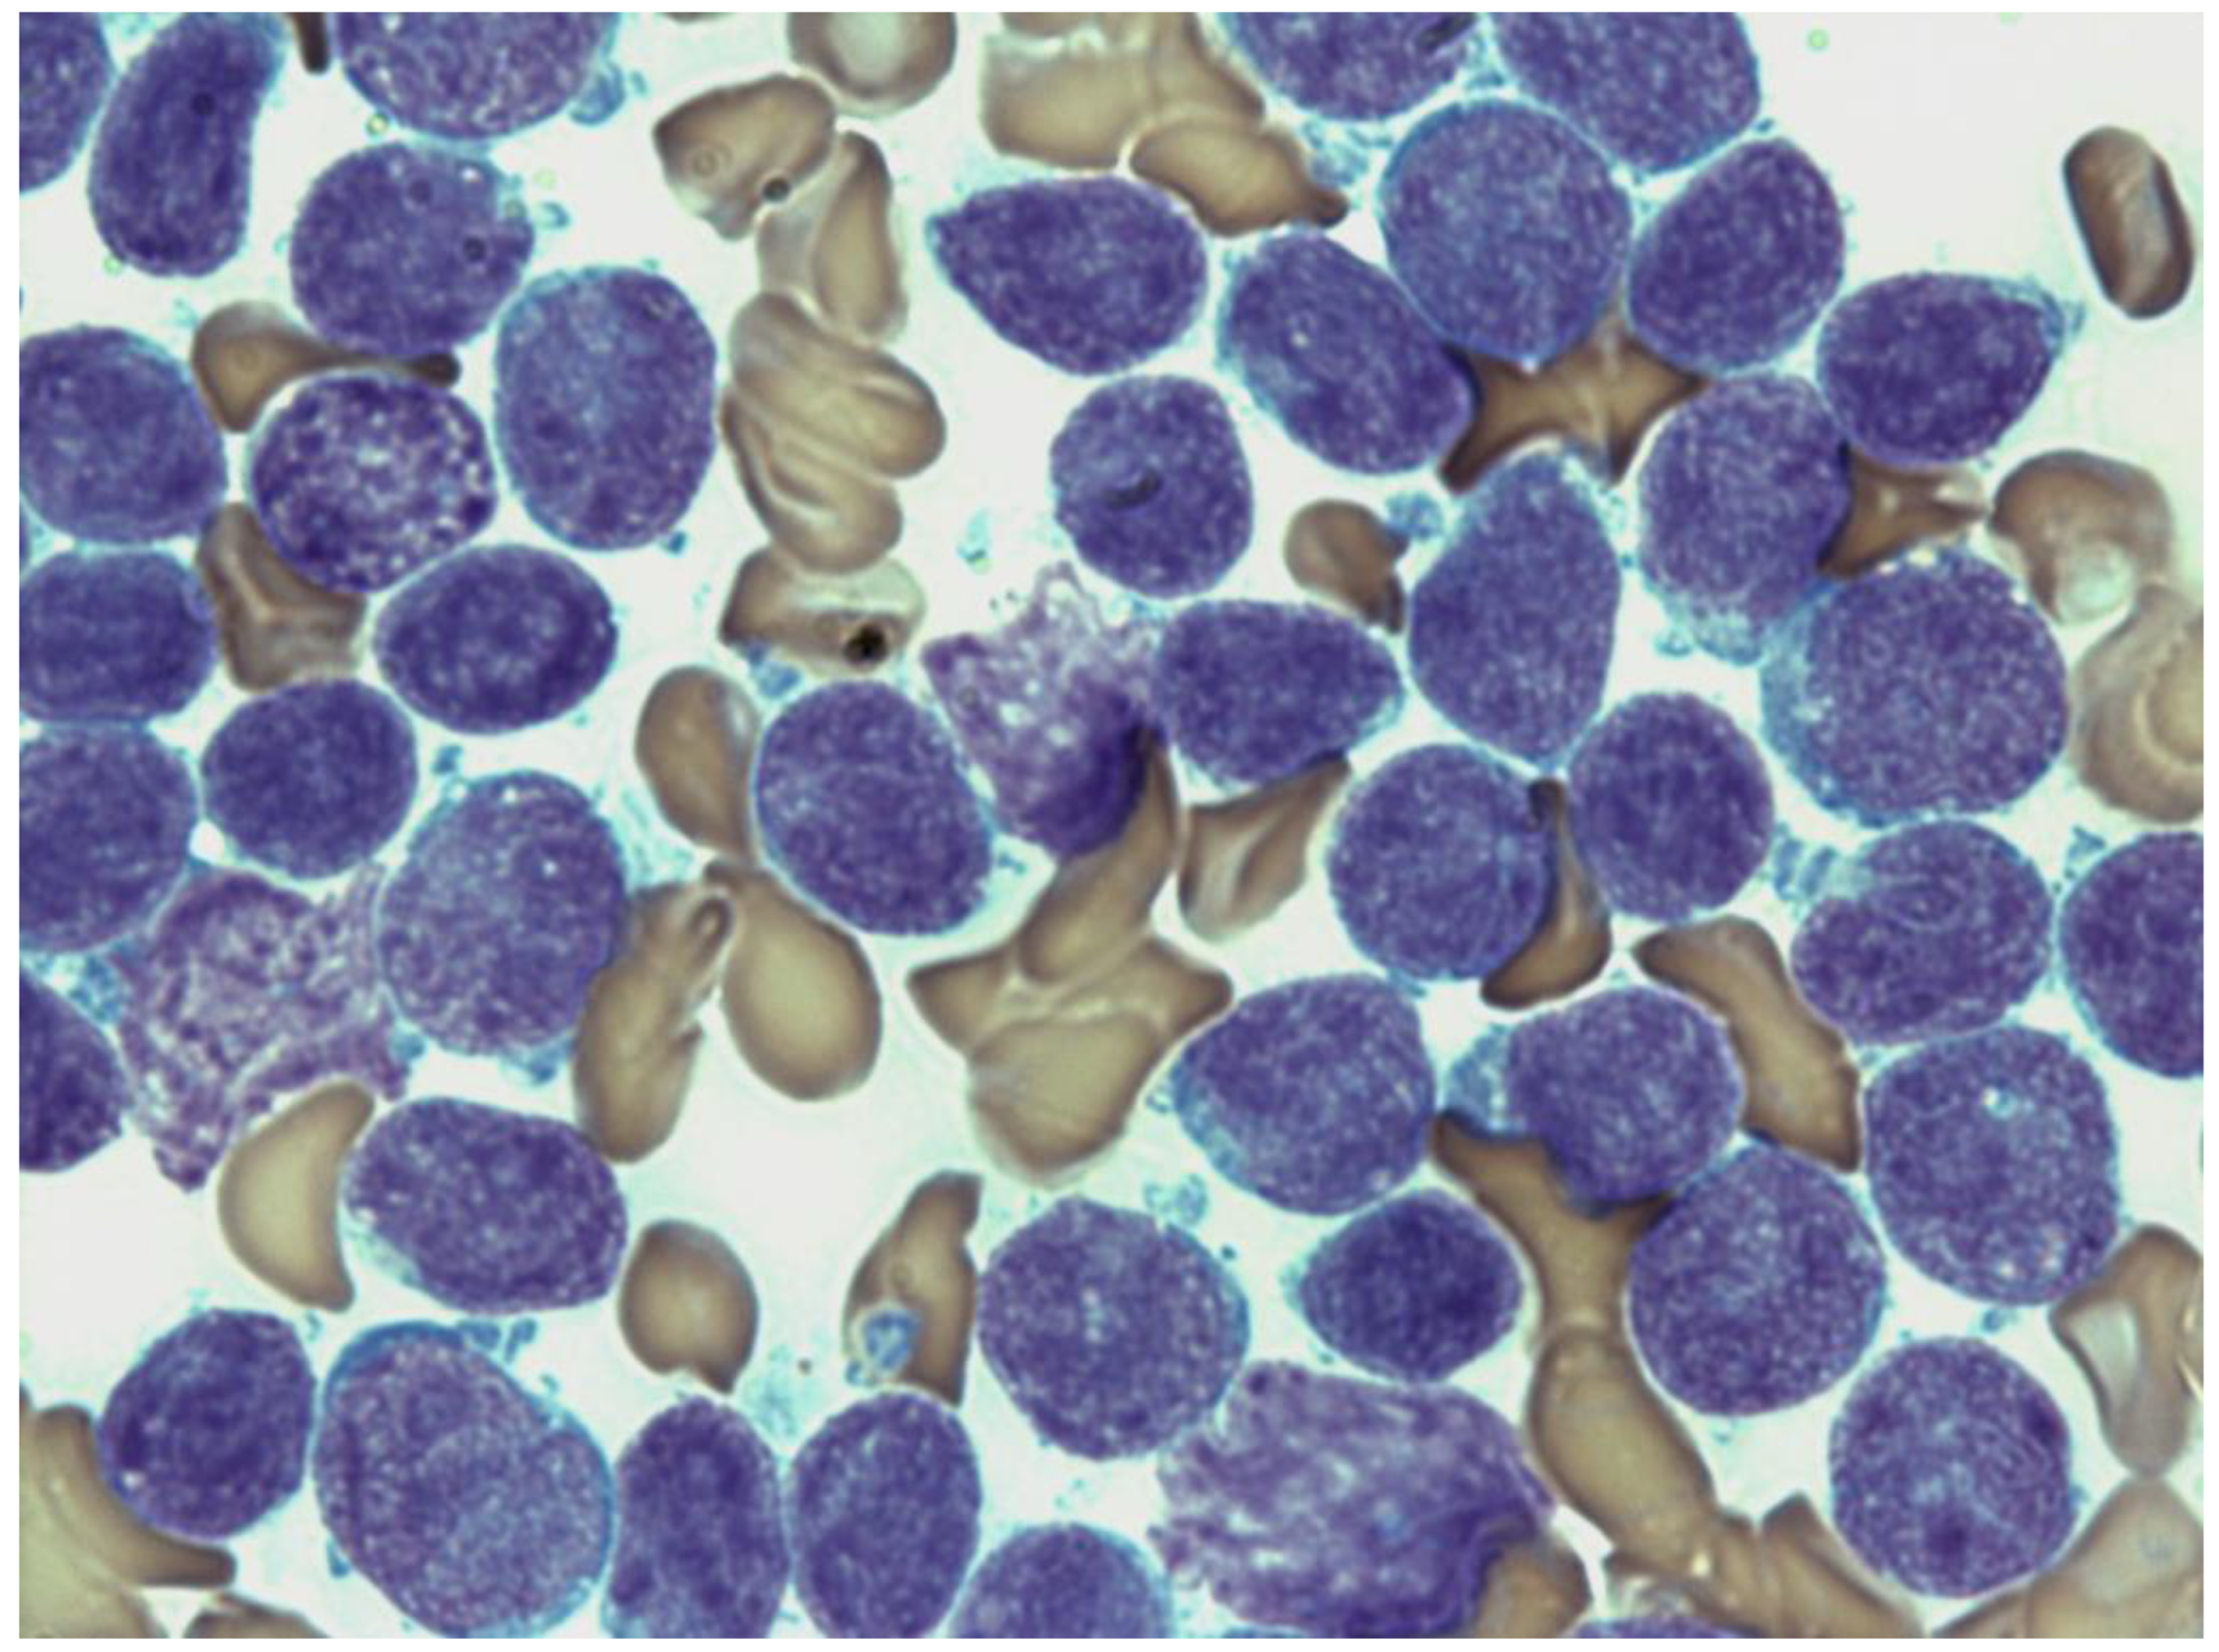 acute lymphoblastic leukemia bone marrow biopsy